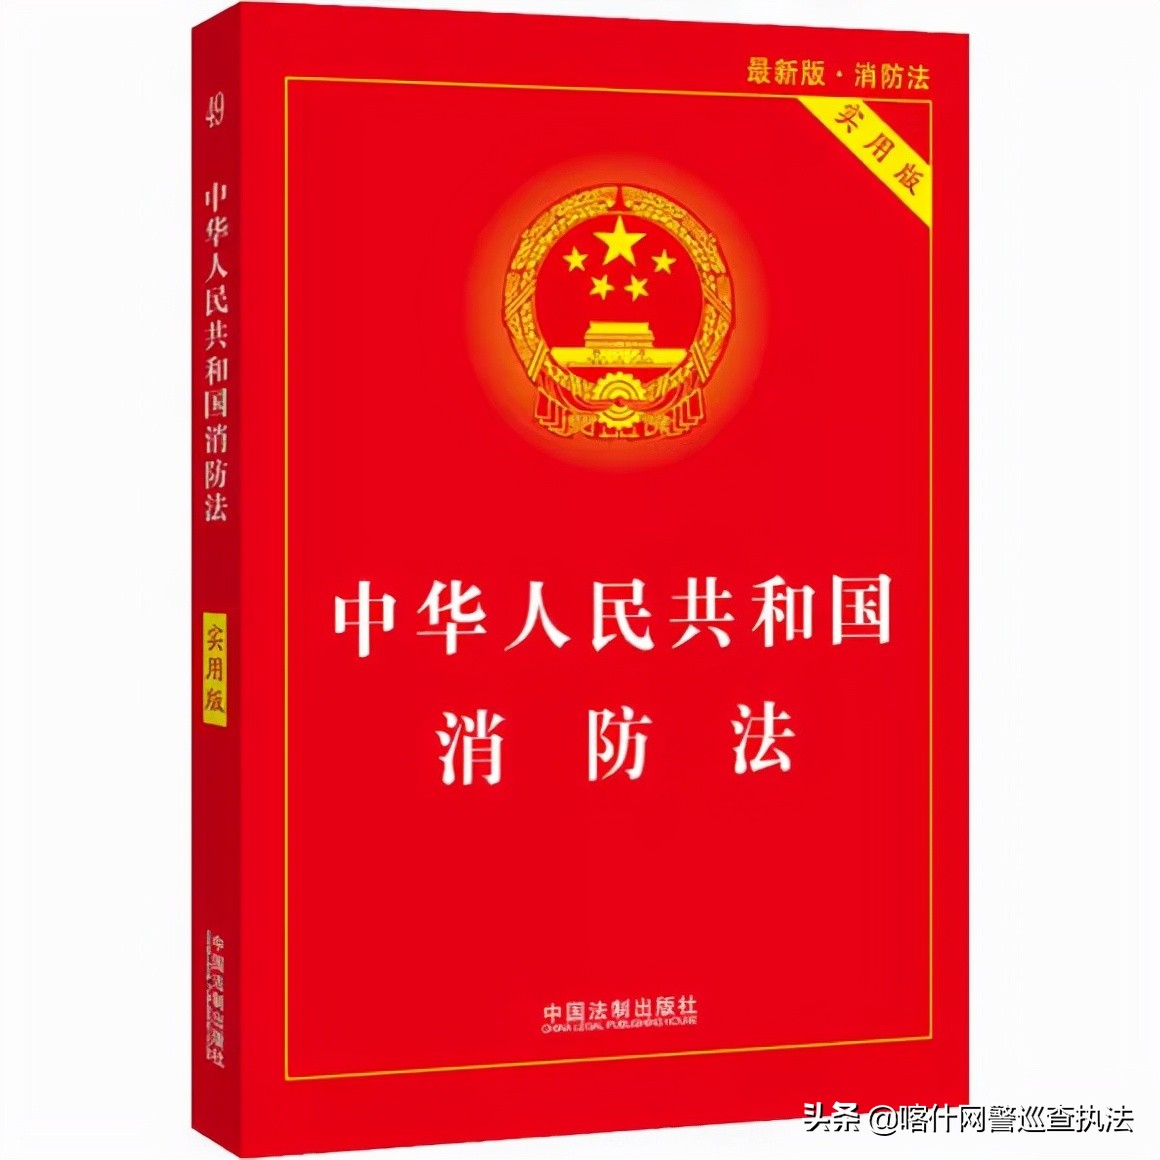 中华人民共和国保险法,中华人民共和国保险法第三十五条规定用人单位